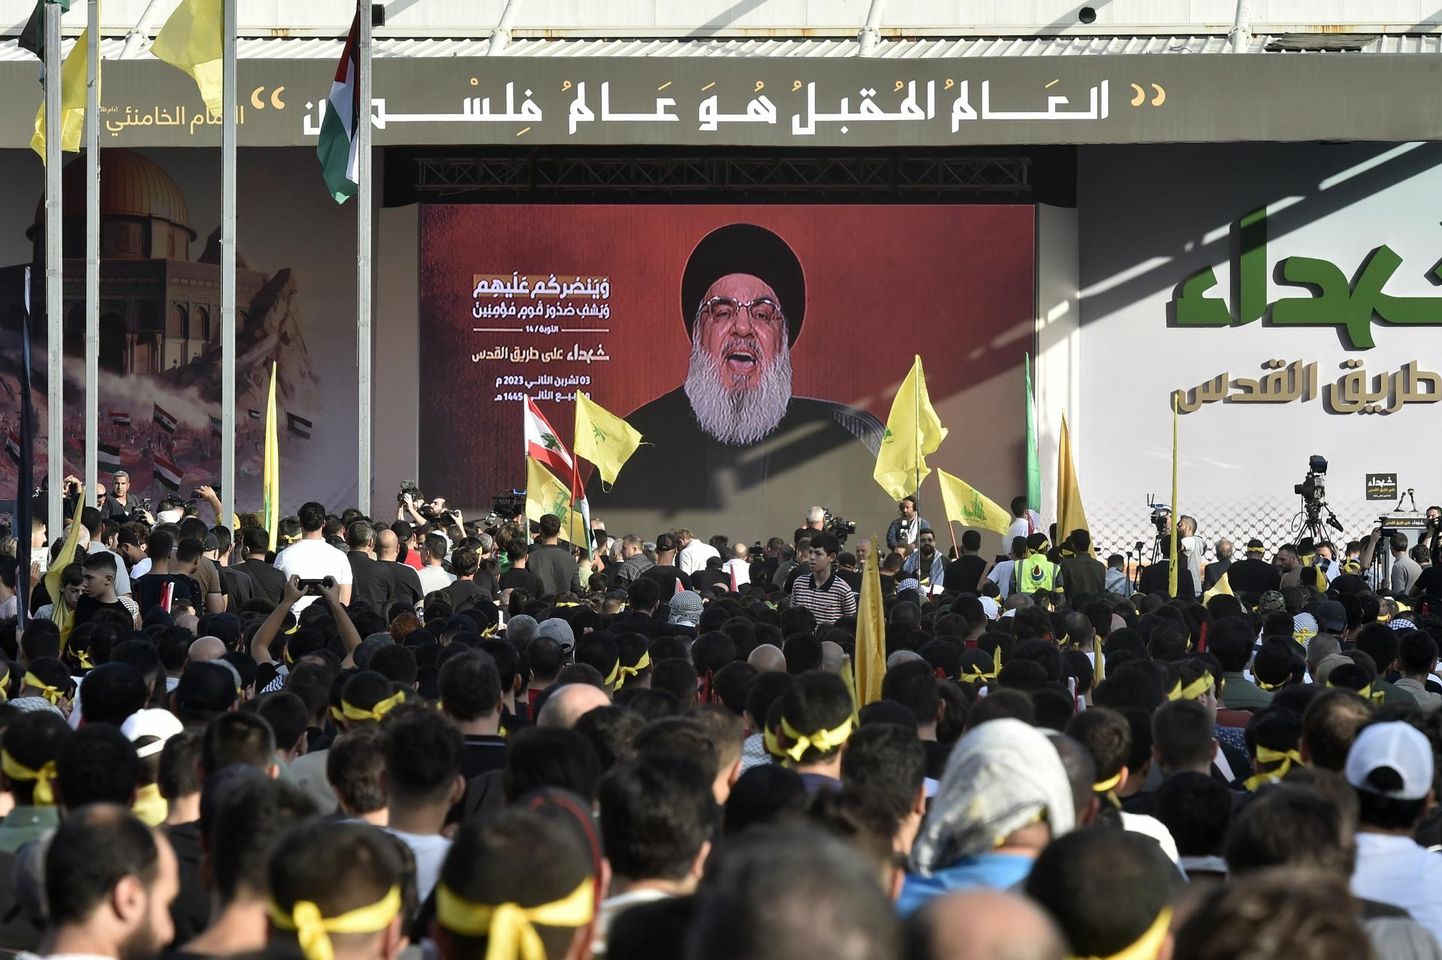 Liibanoni pealinna Beiruti äärelinna kogunenud inimesed kuulavad eile video vahendusel kõnelevat šiiaislamistliku rühmituse Hezbollah’ juhti Hassan Nasrallah’t. 